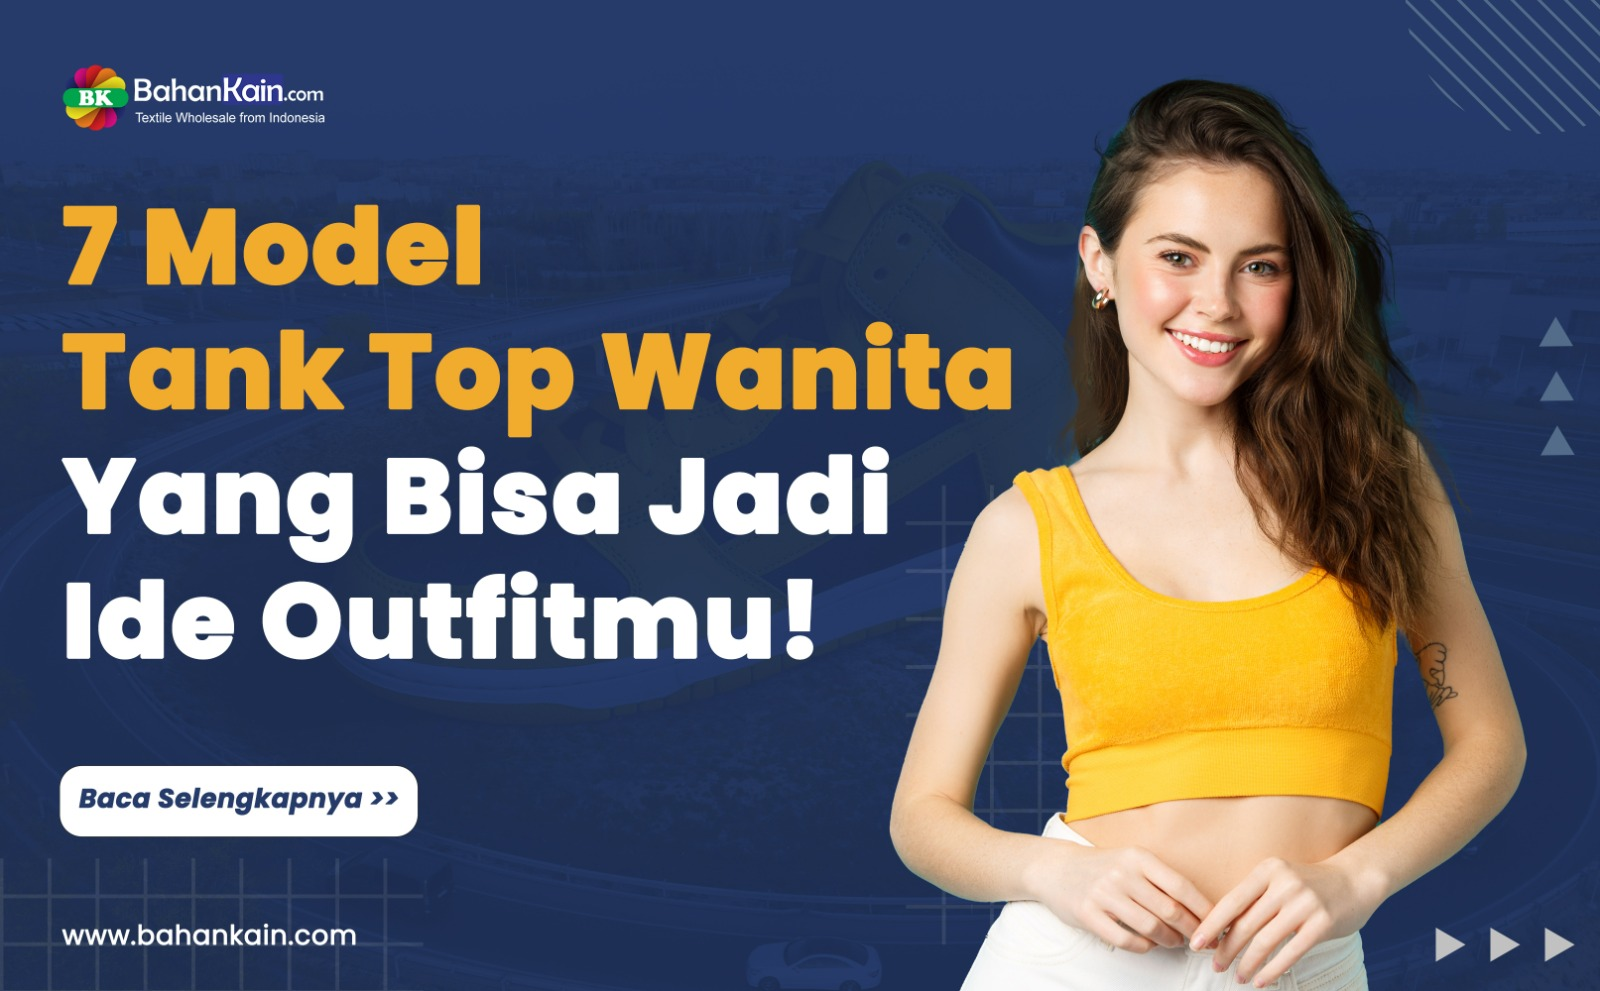 7 Model Tank Top Wanita Yang Bisa Jadi Ide Outfitmu!